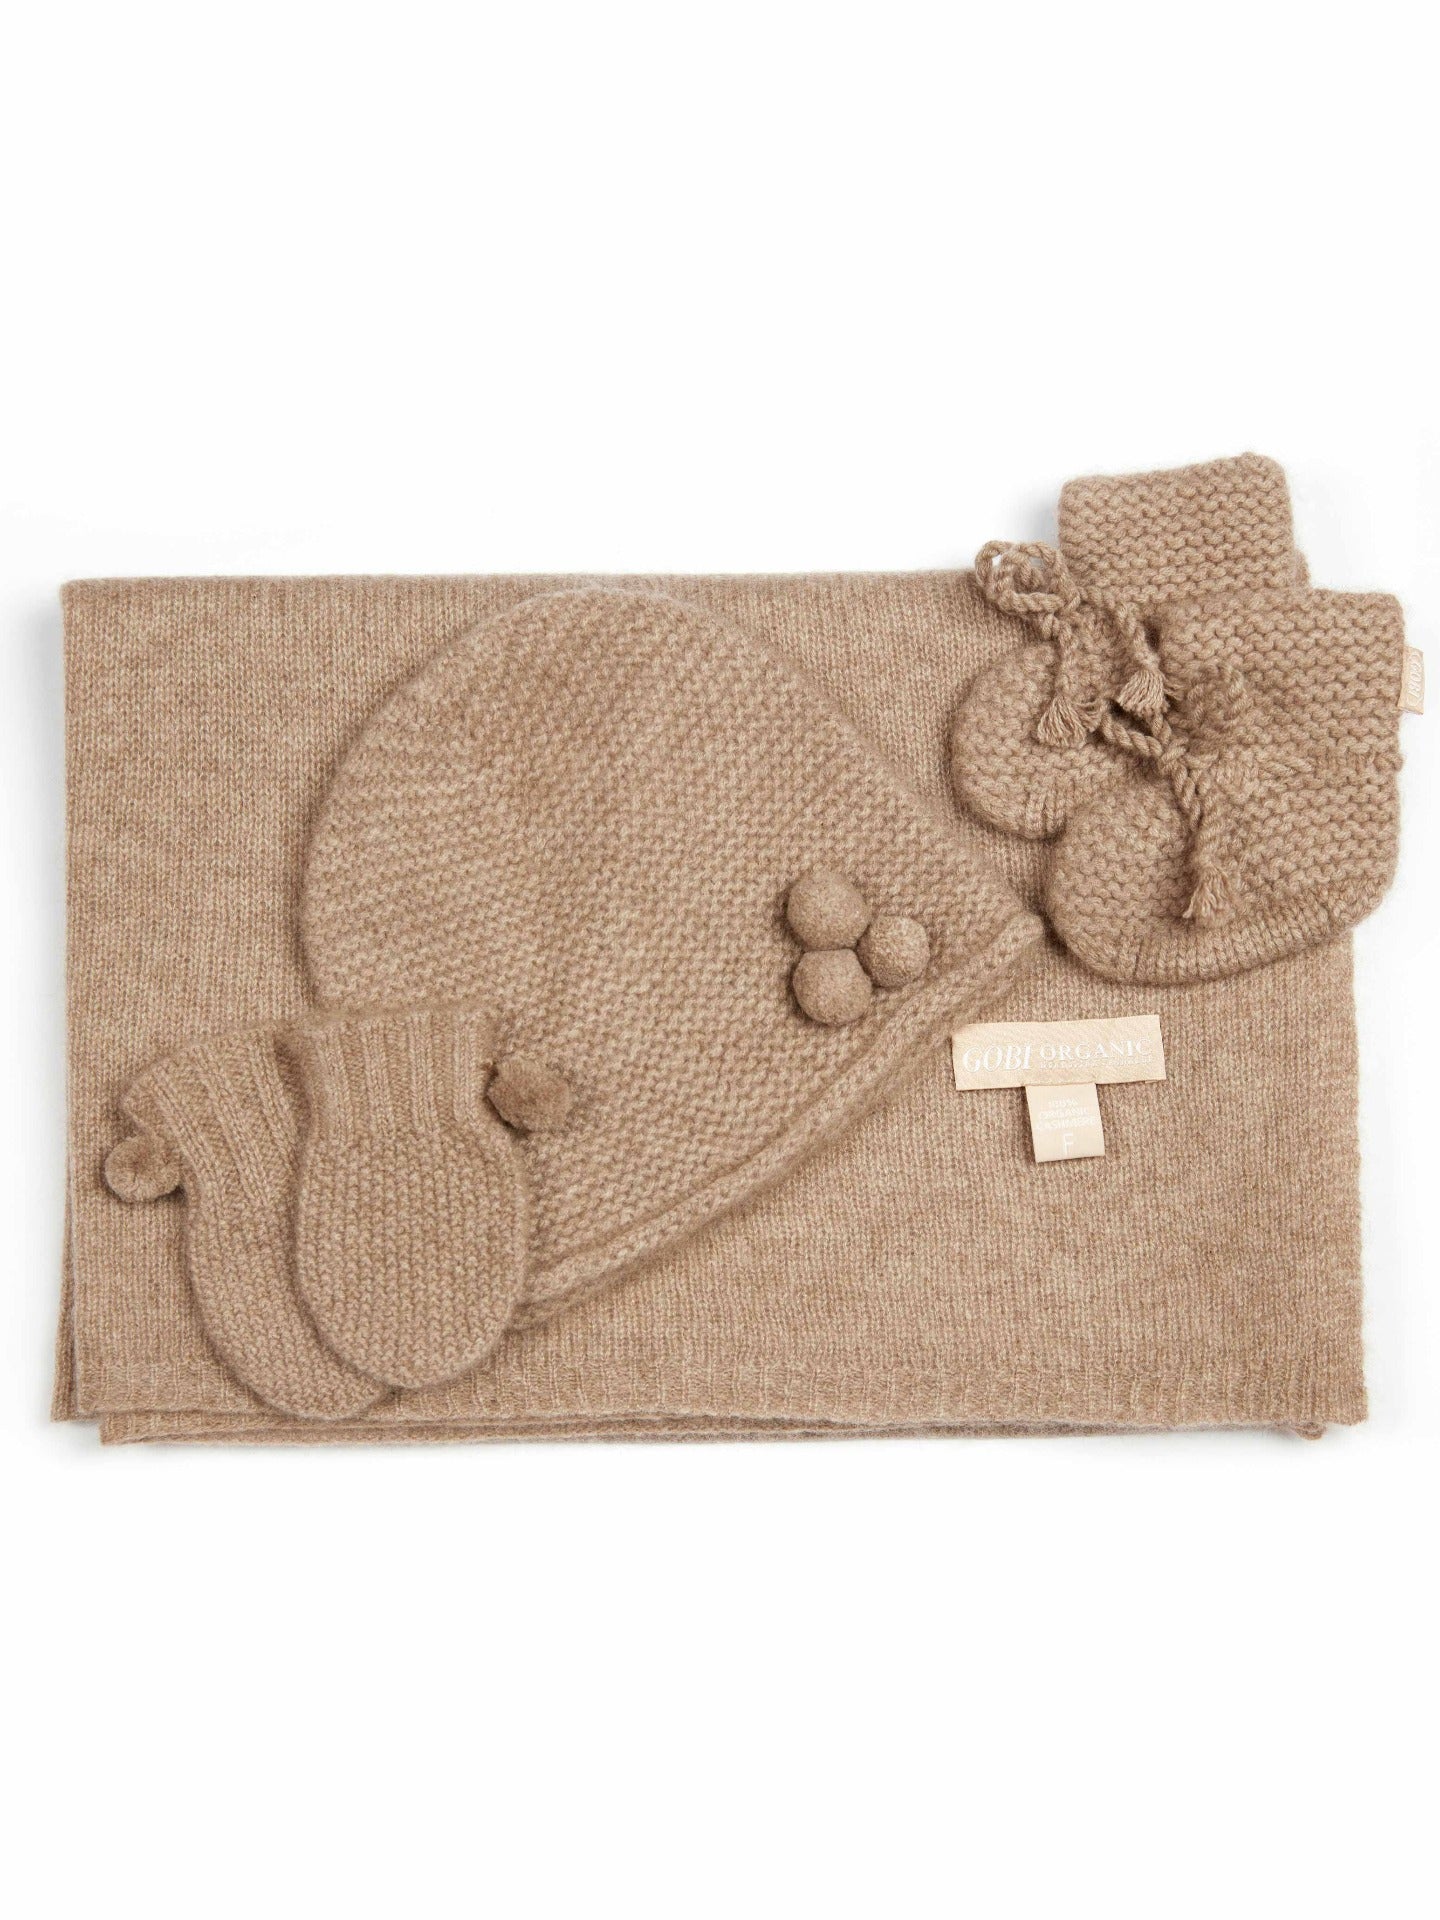 Unisex Cashmere Baby Set Taupe - Gobi Cashmere